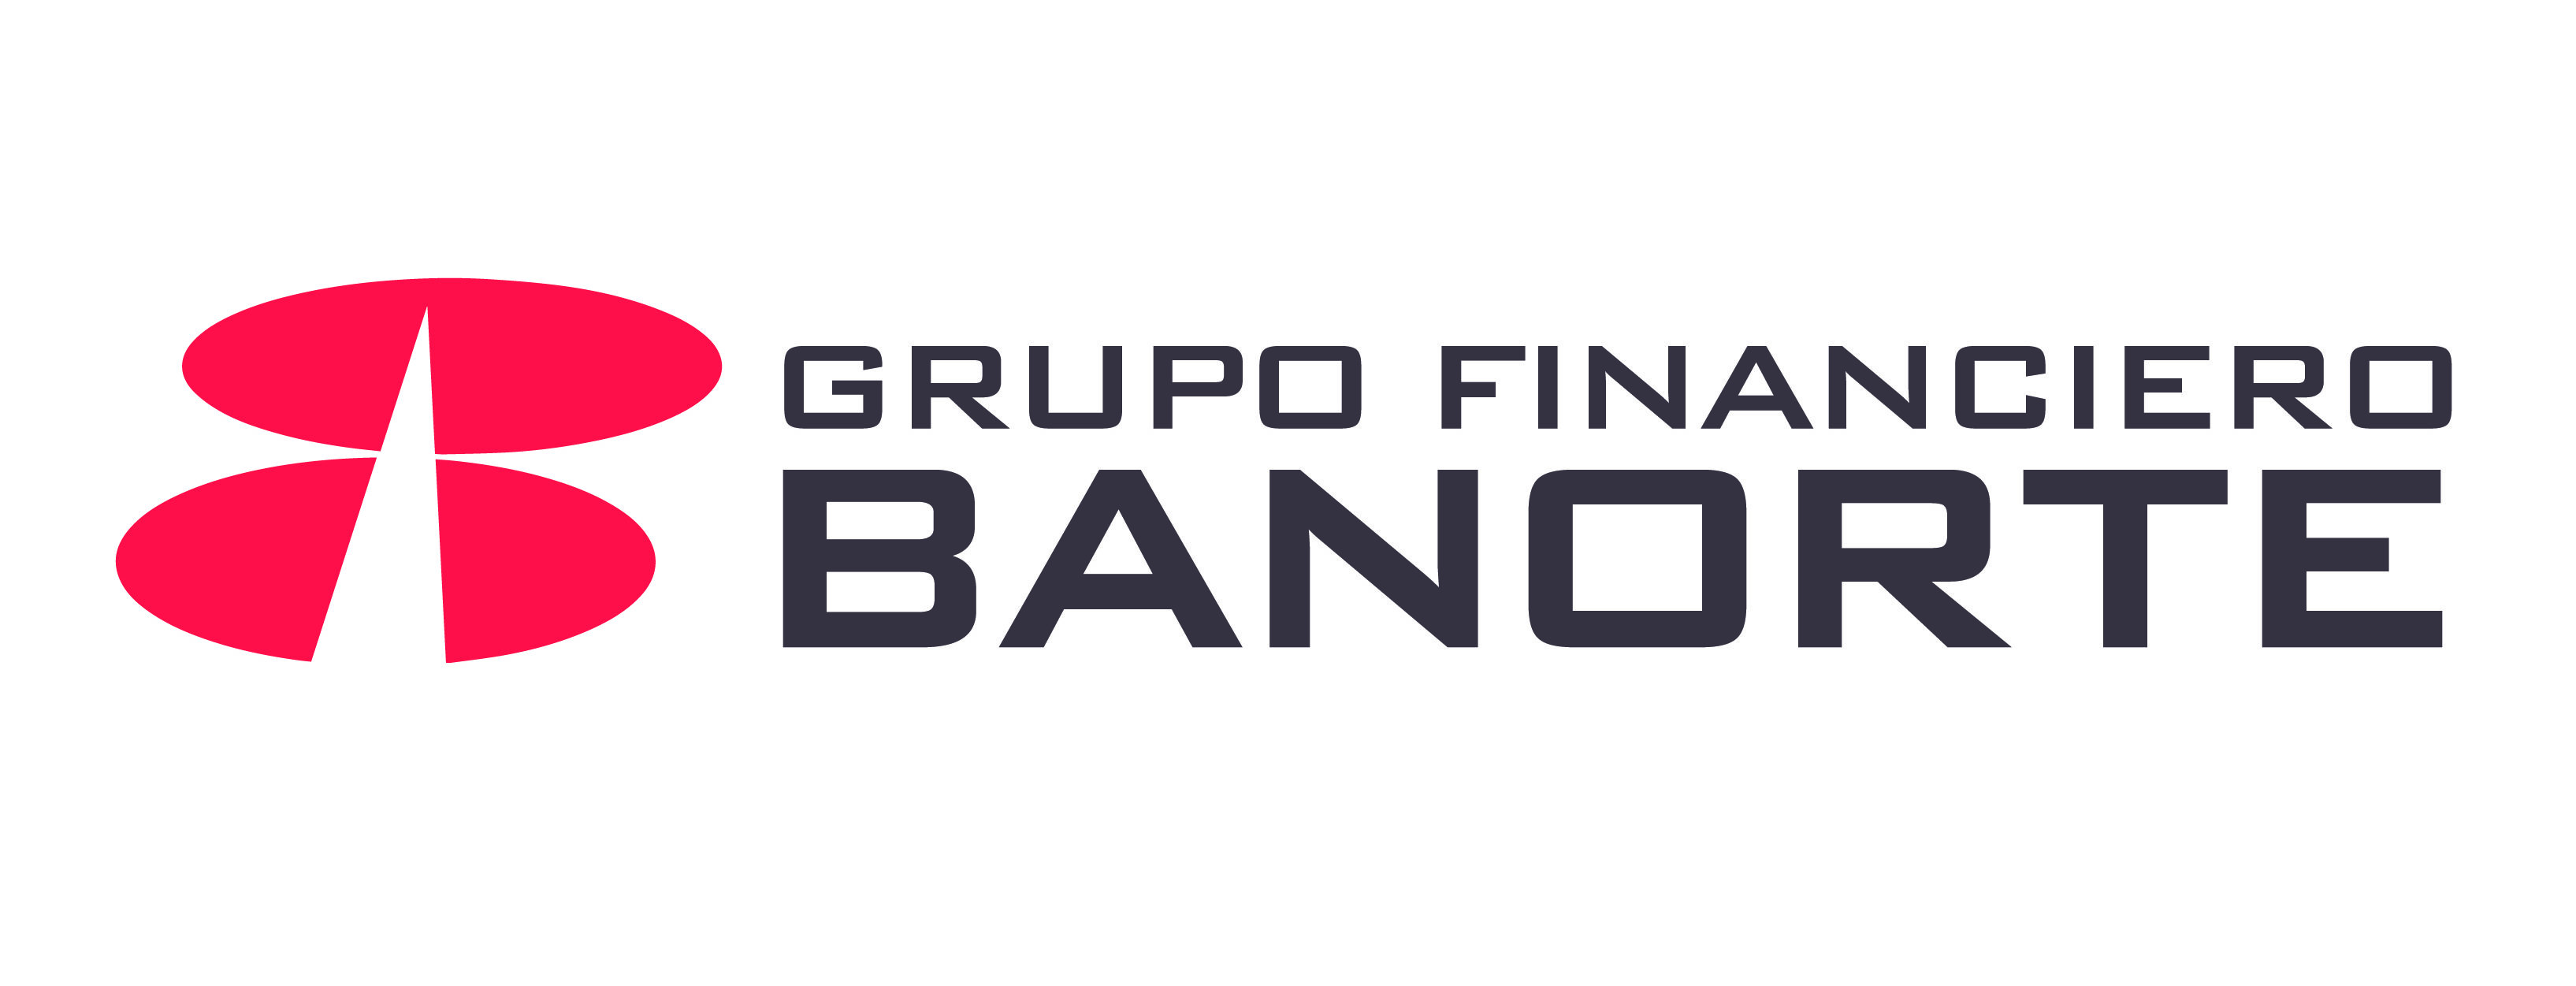 Grupo Financiero Banorte, S.A.B. De C.V.